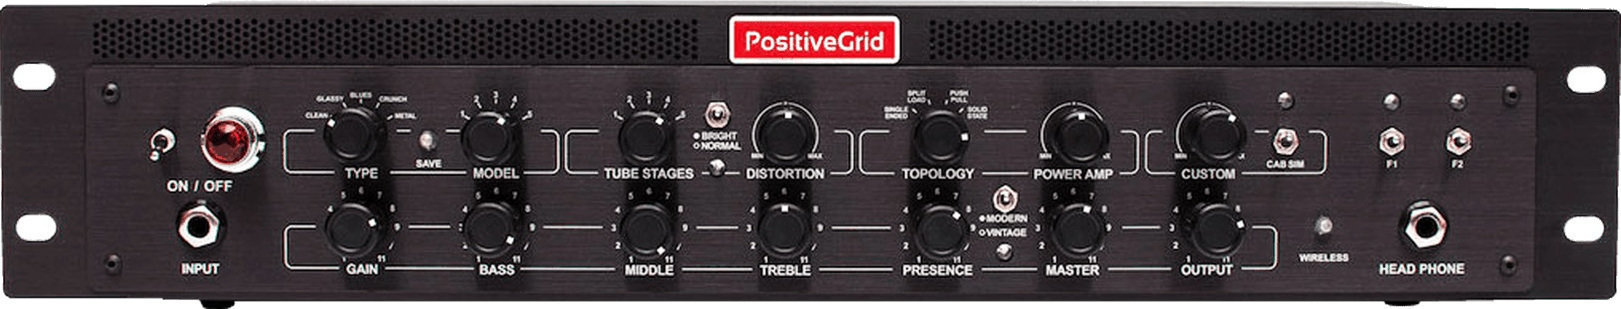 Modelingový kytarový zesilovač Positive Grid BIAS Rack Processor